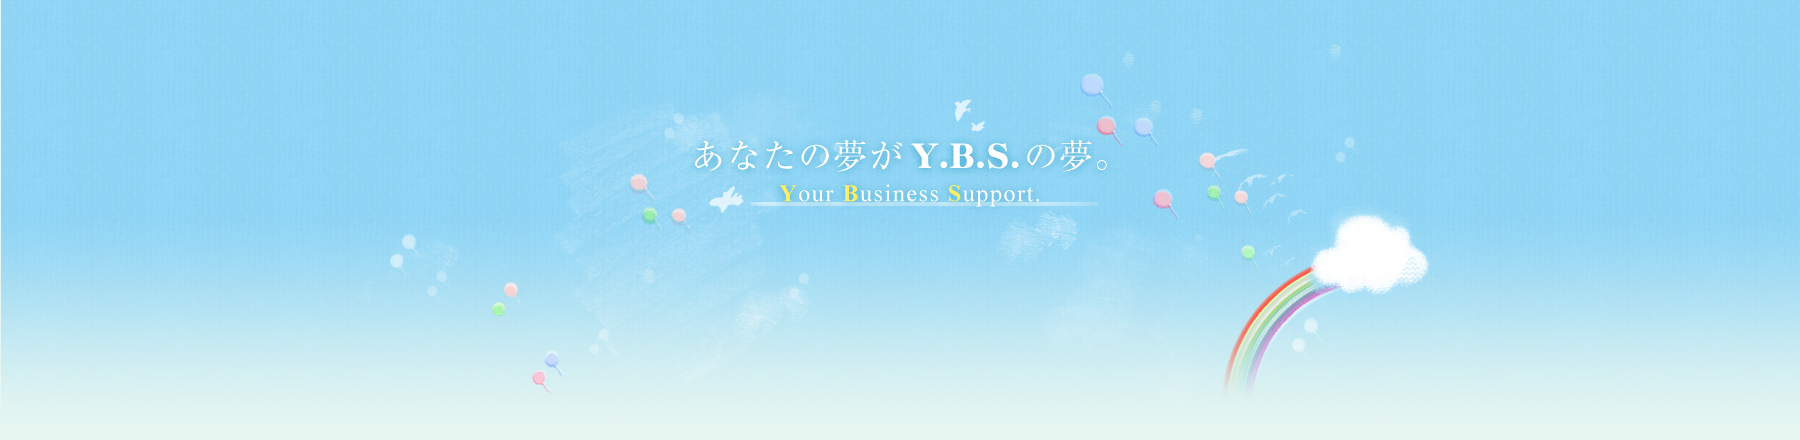 あなたの夢がY.B.S.の夢。-Your Business Support